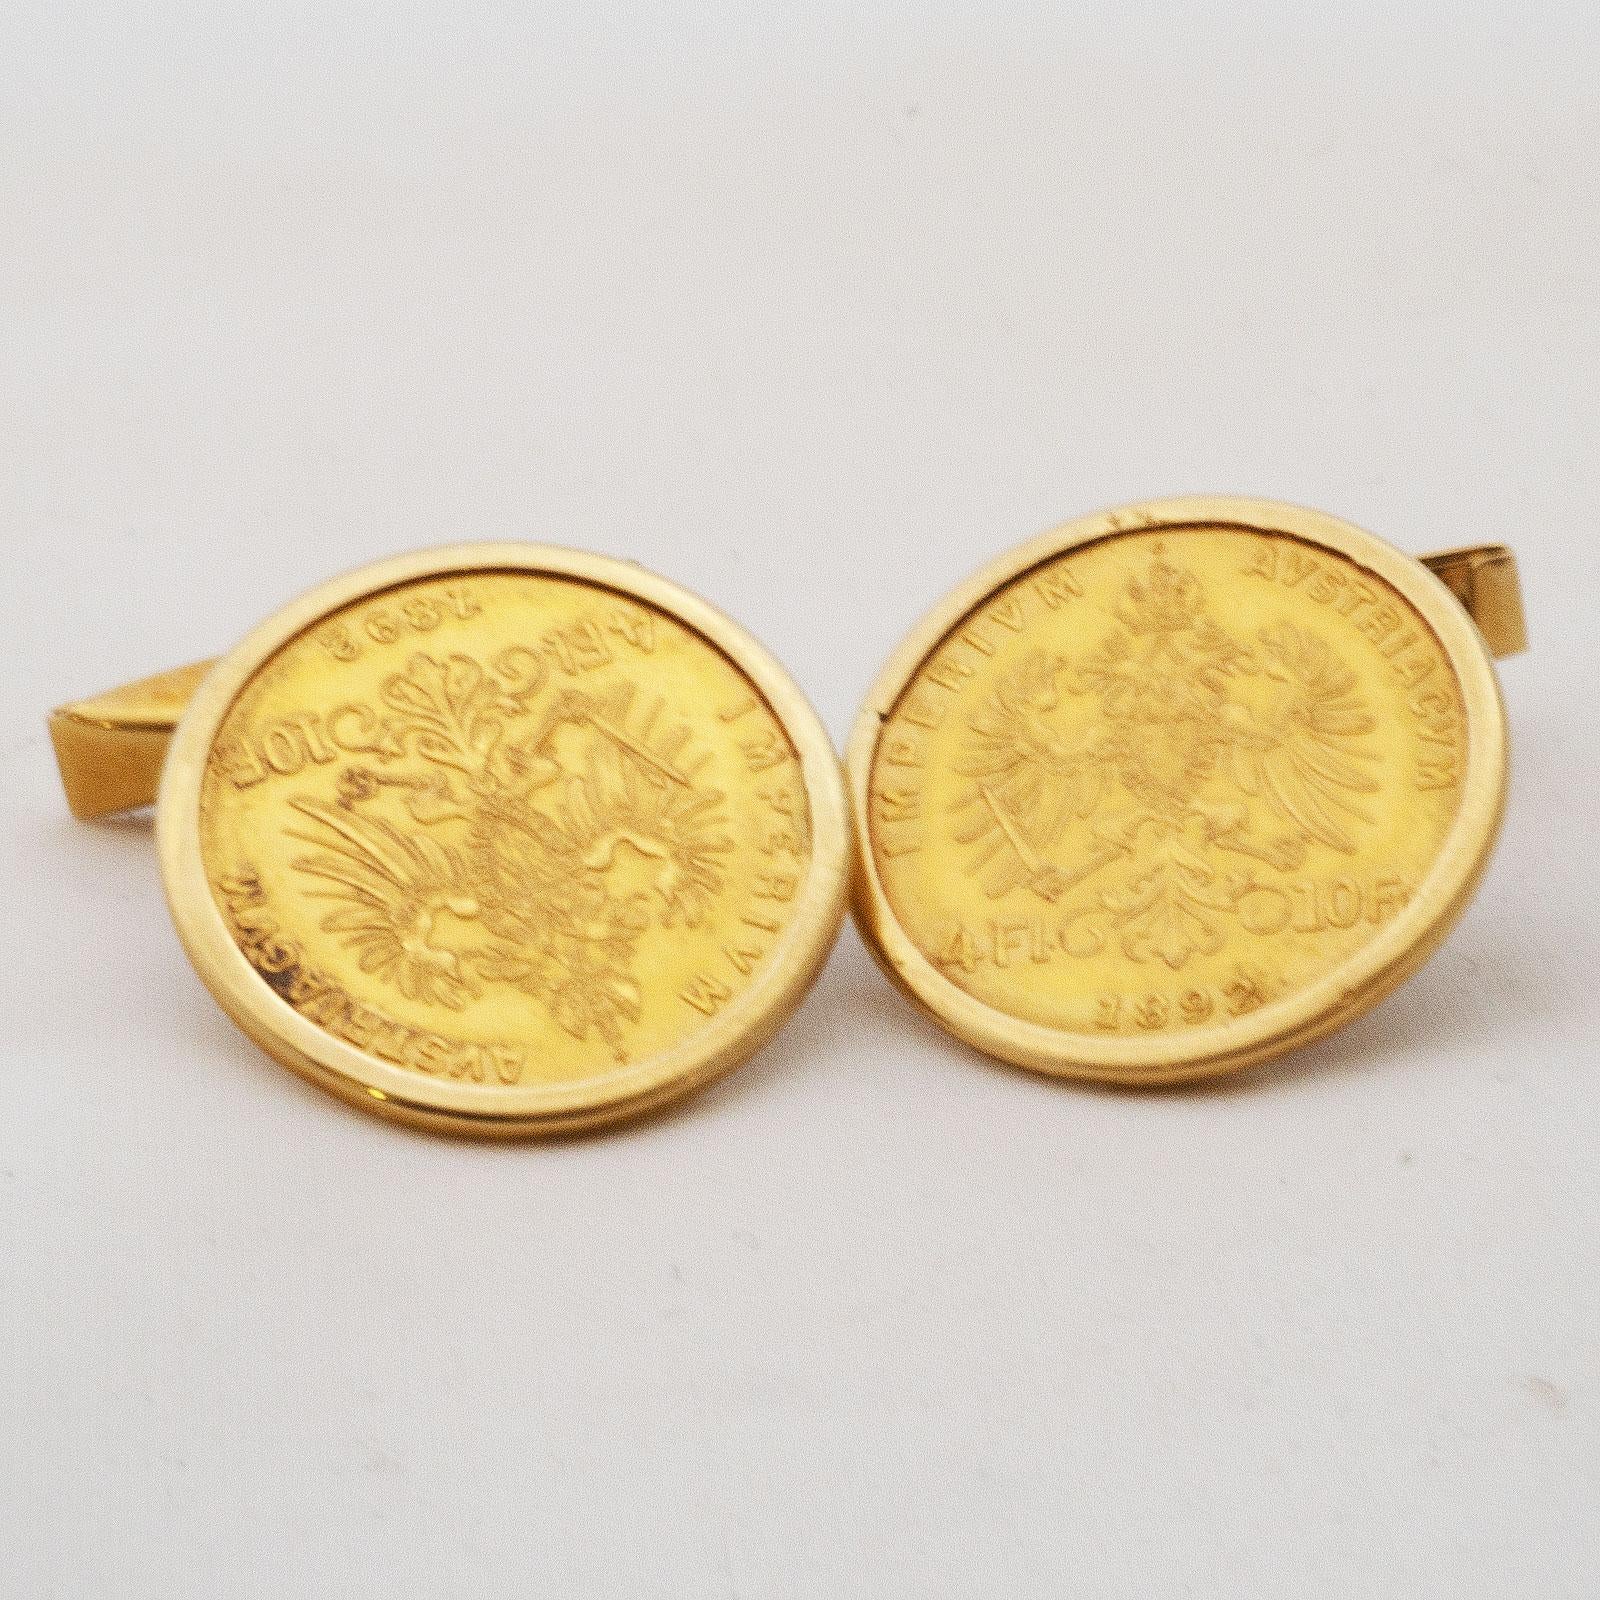 Golden cuff links made of ducat 